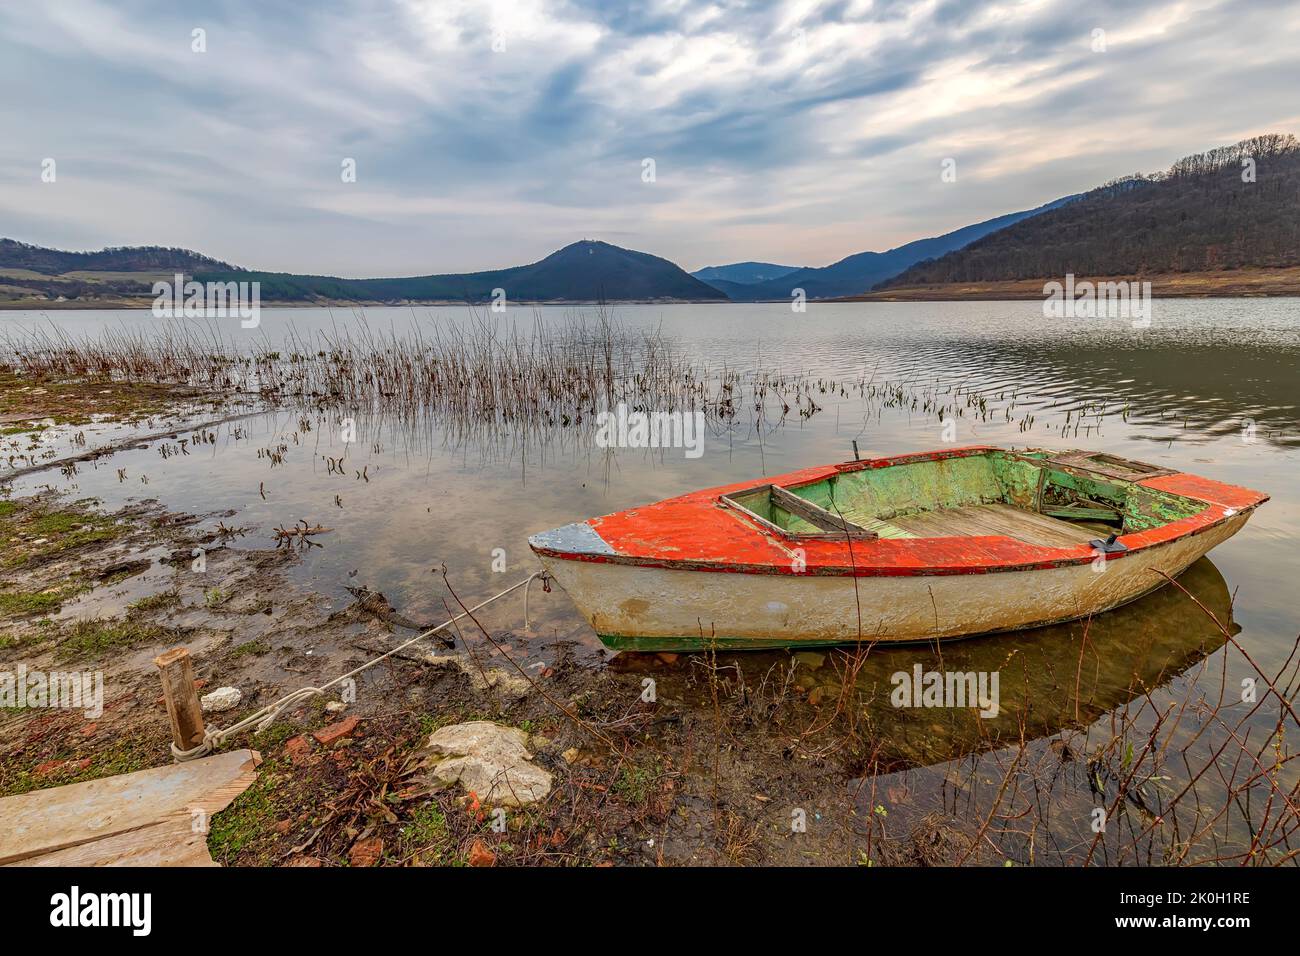 L'atmosfera idilliaca su una riva del lago con una barca di legno Foto Stock